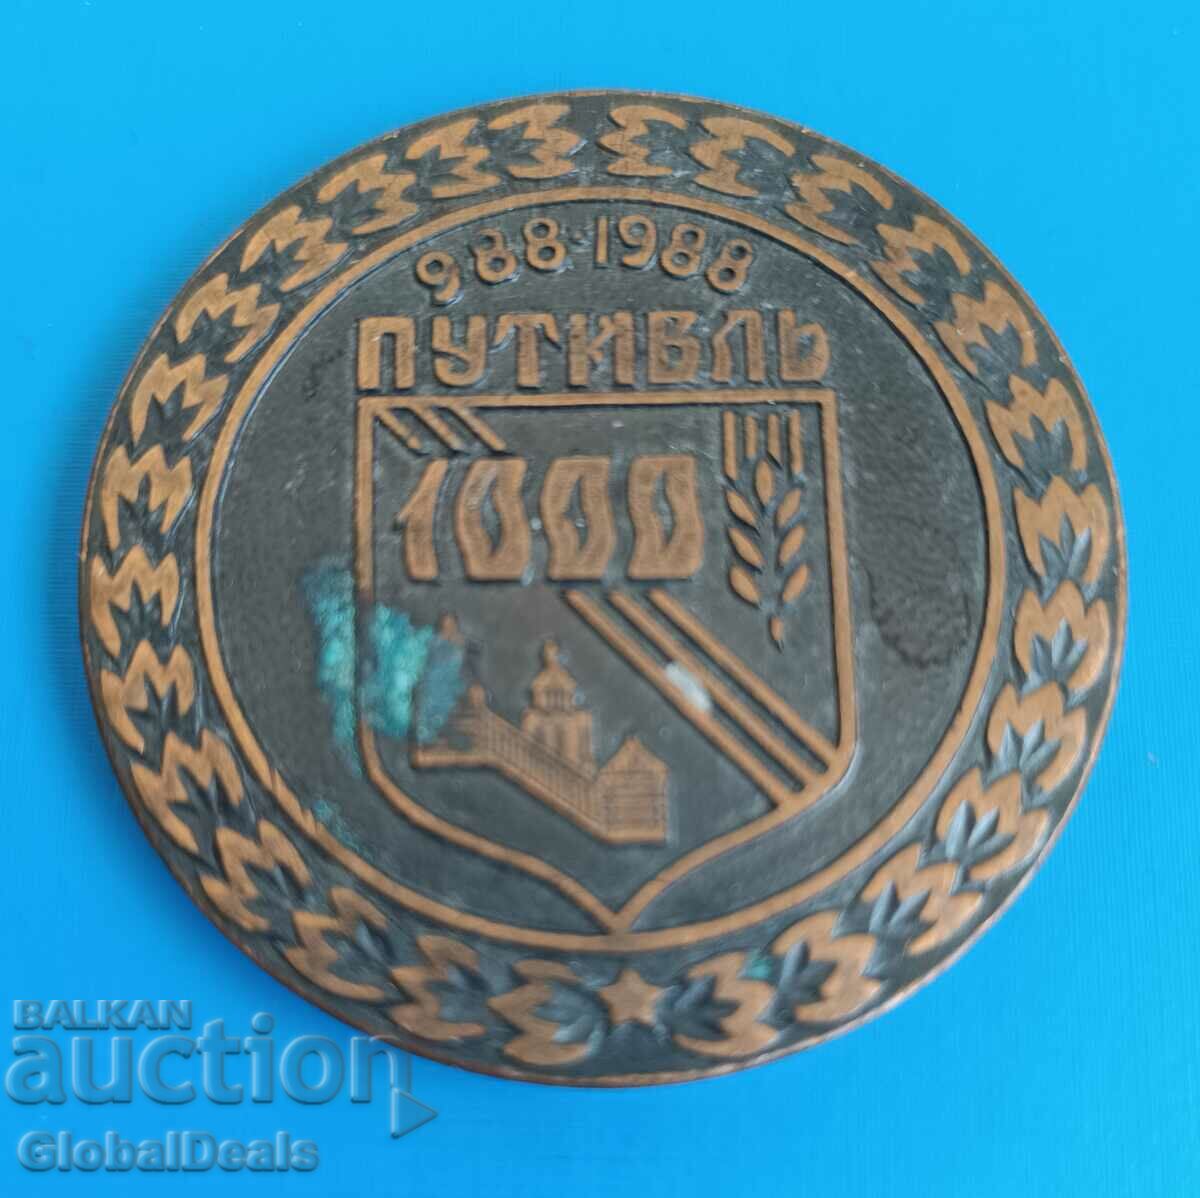 1ο BZC - Μετάλλιο, Πλακέτα - 1000 χρόνια της πόλης Putivl, ΕΣΣΔ